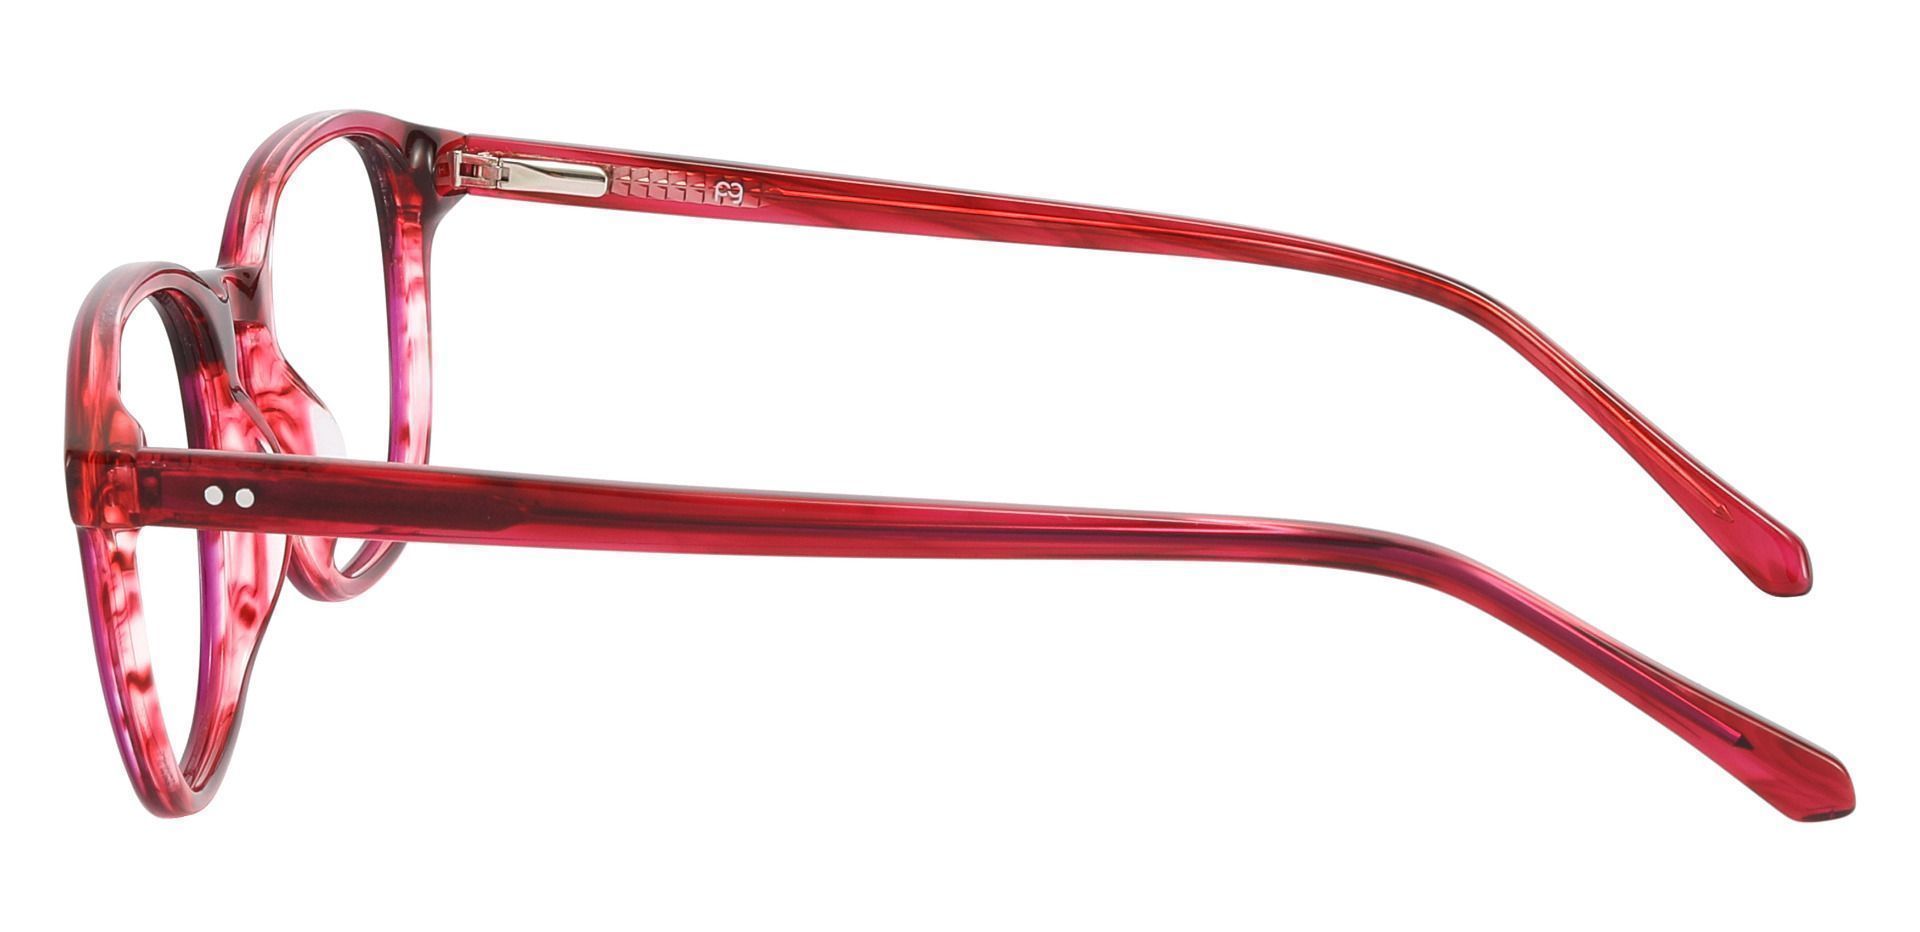 Arabella Oval Prescription Glasses - Red